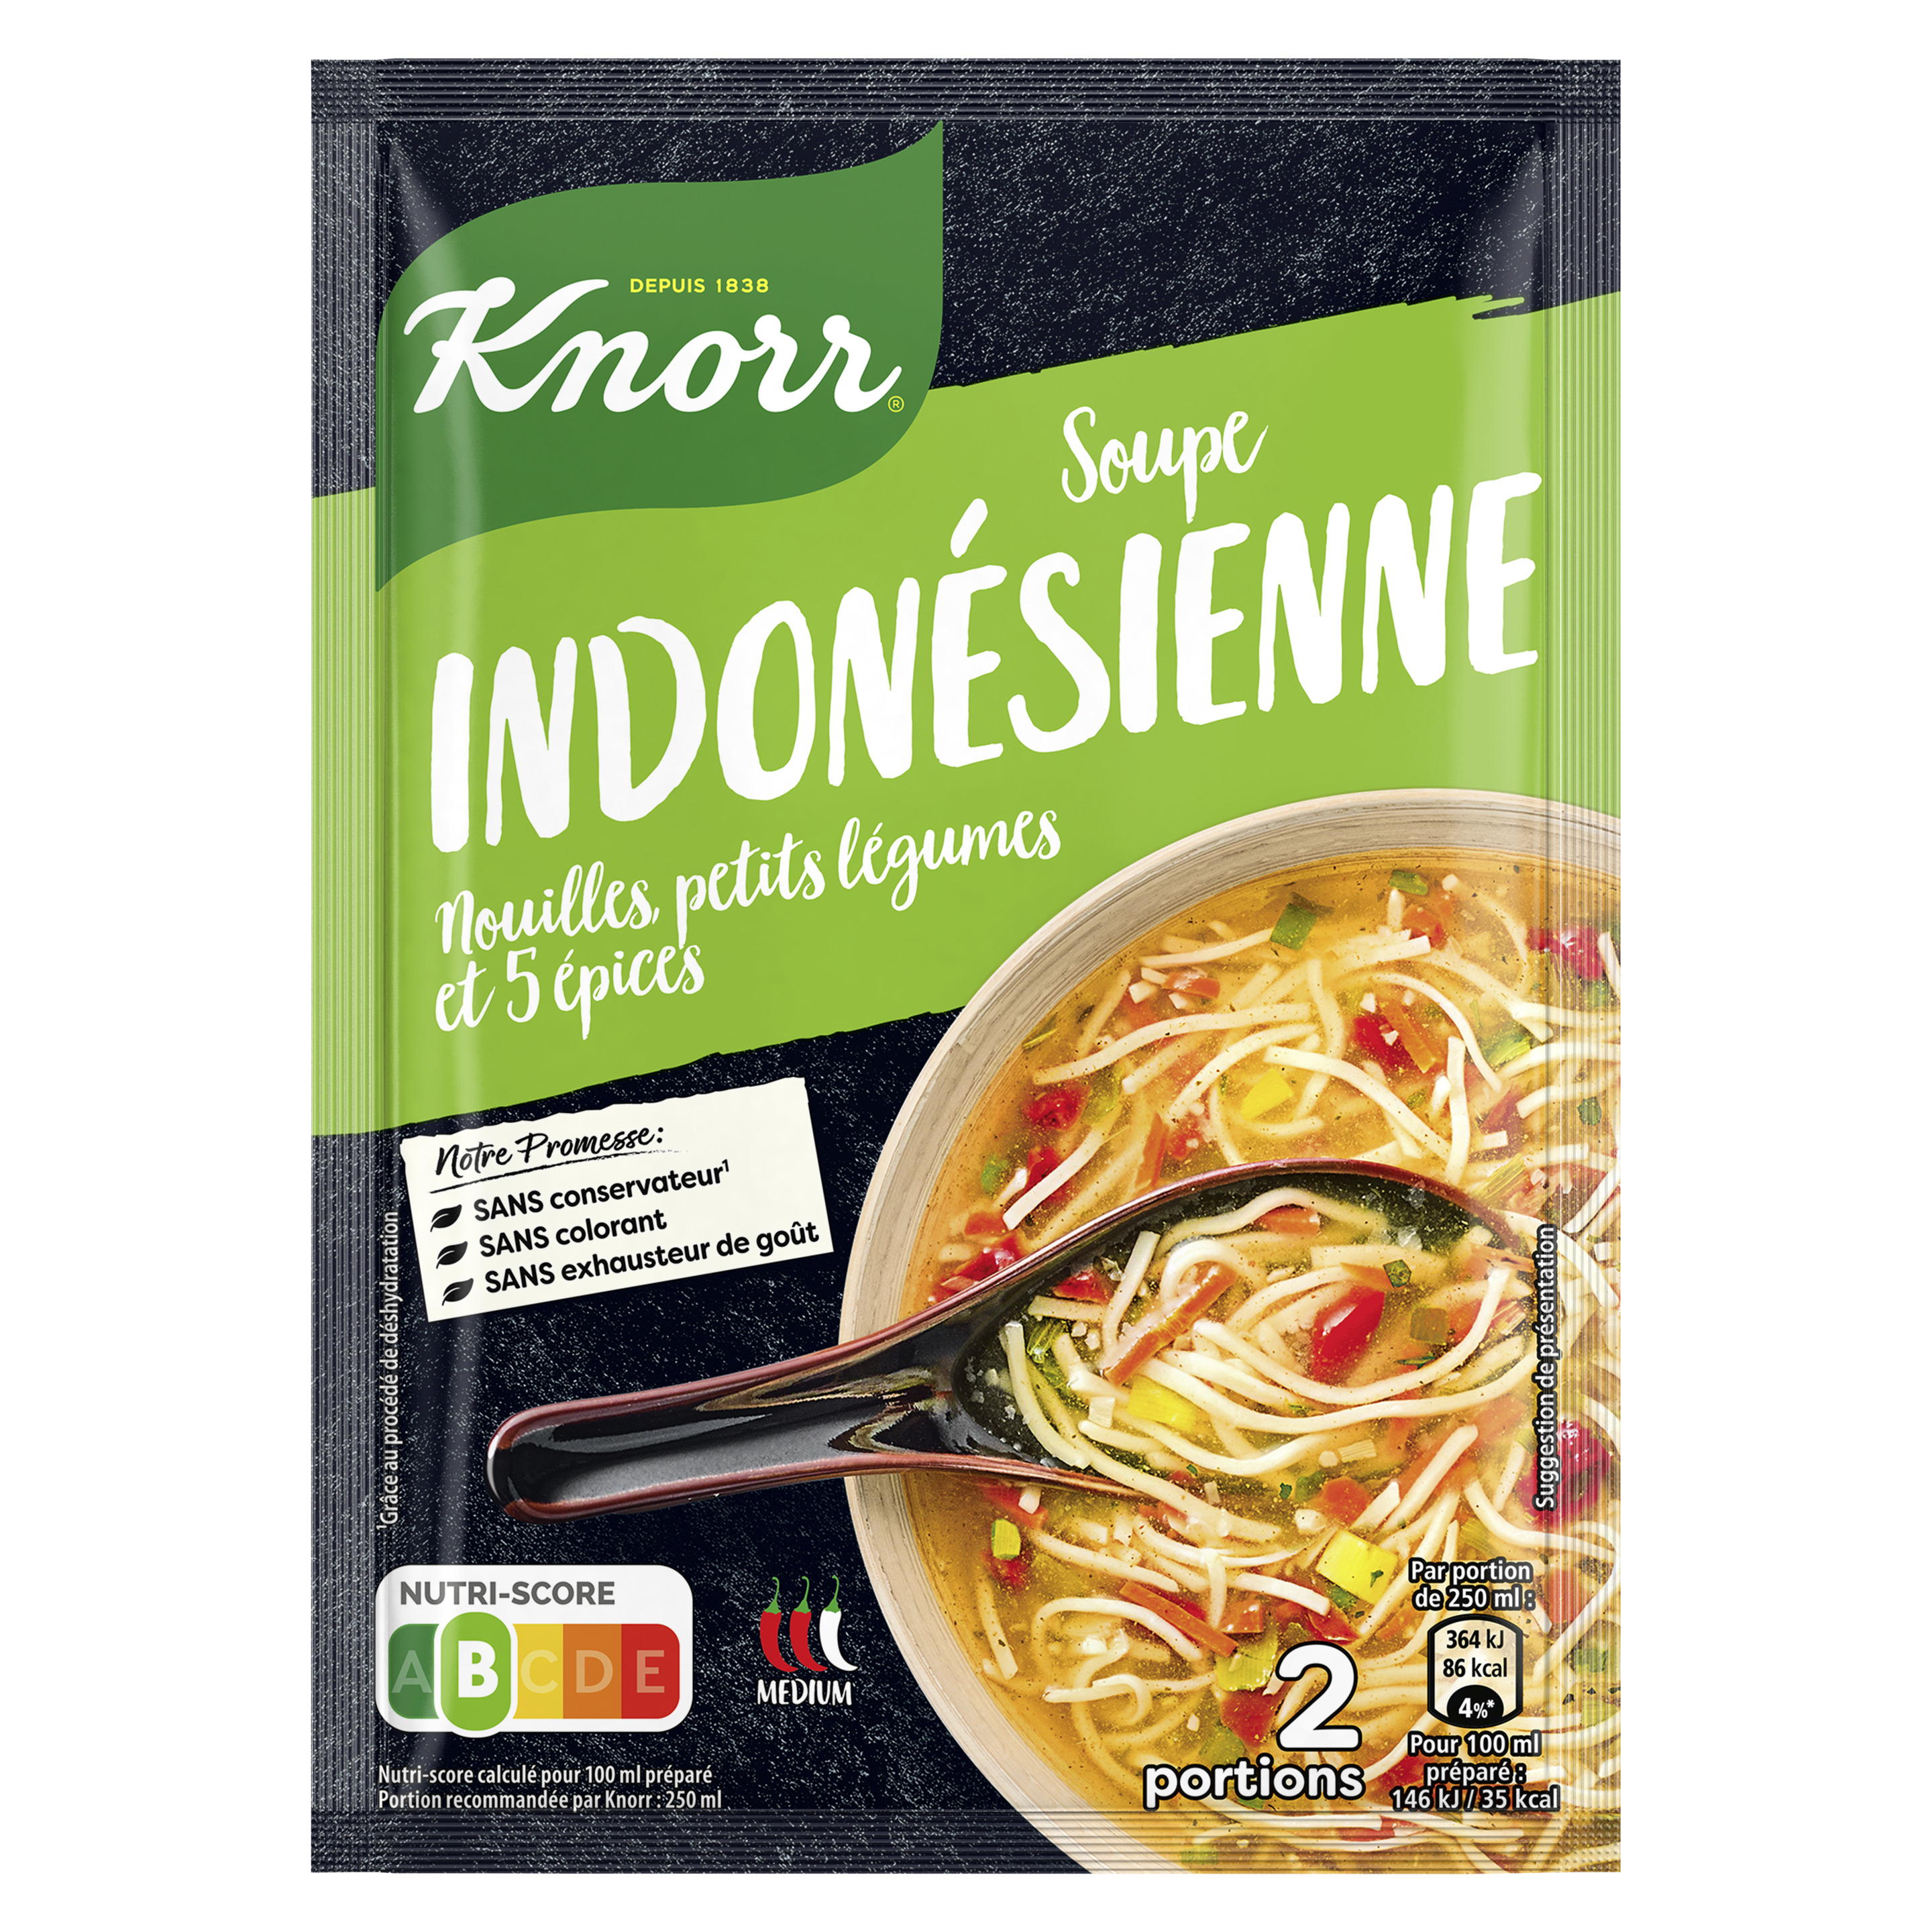 Soupe Indonésienne, nouilles, petits légumes et 5 épices